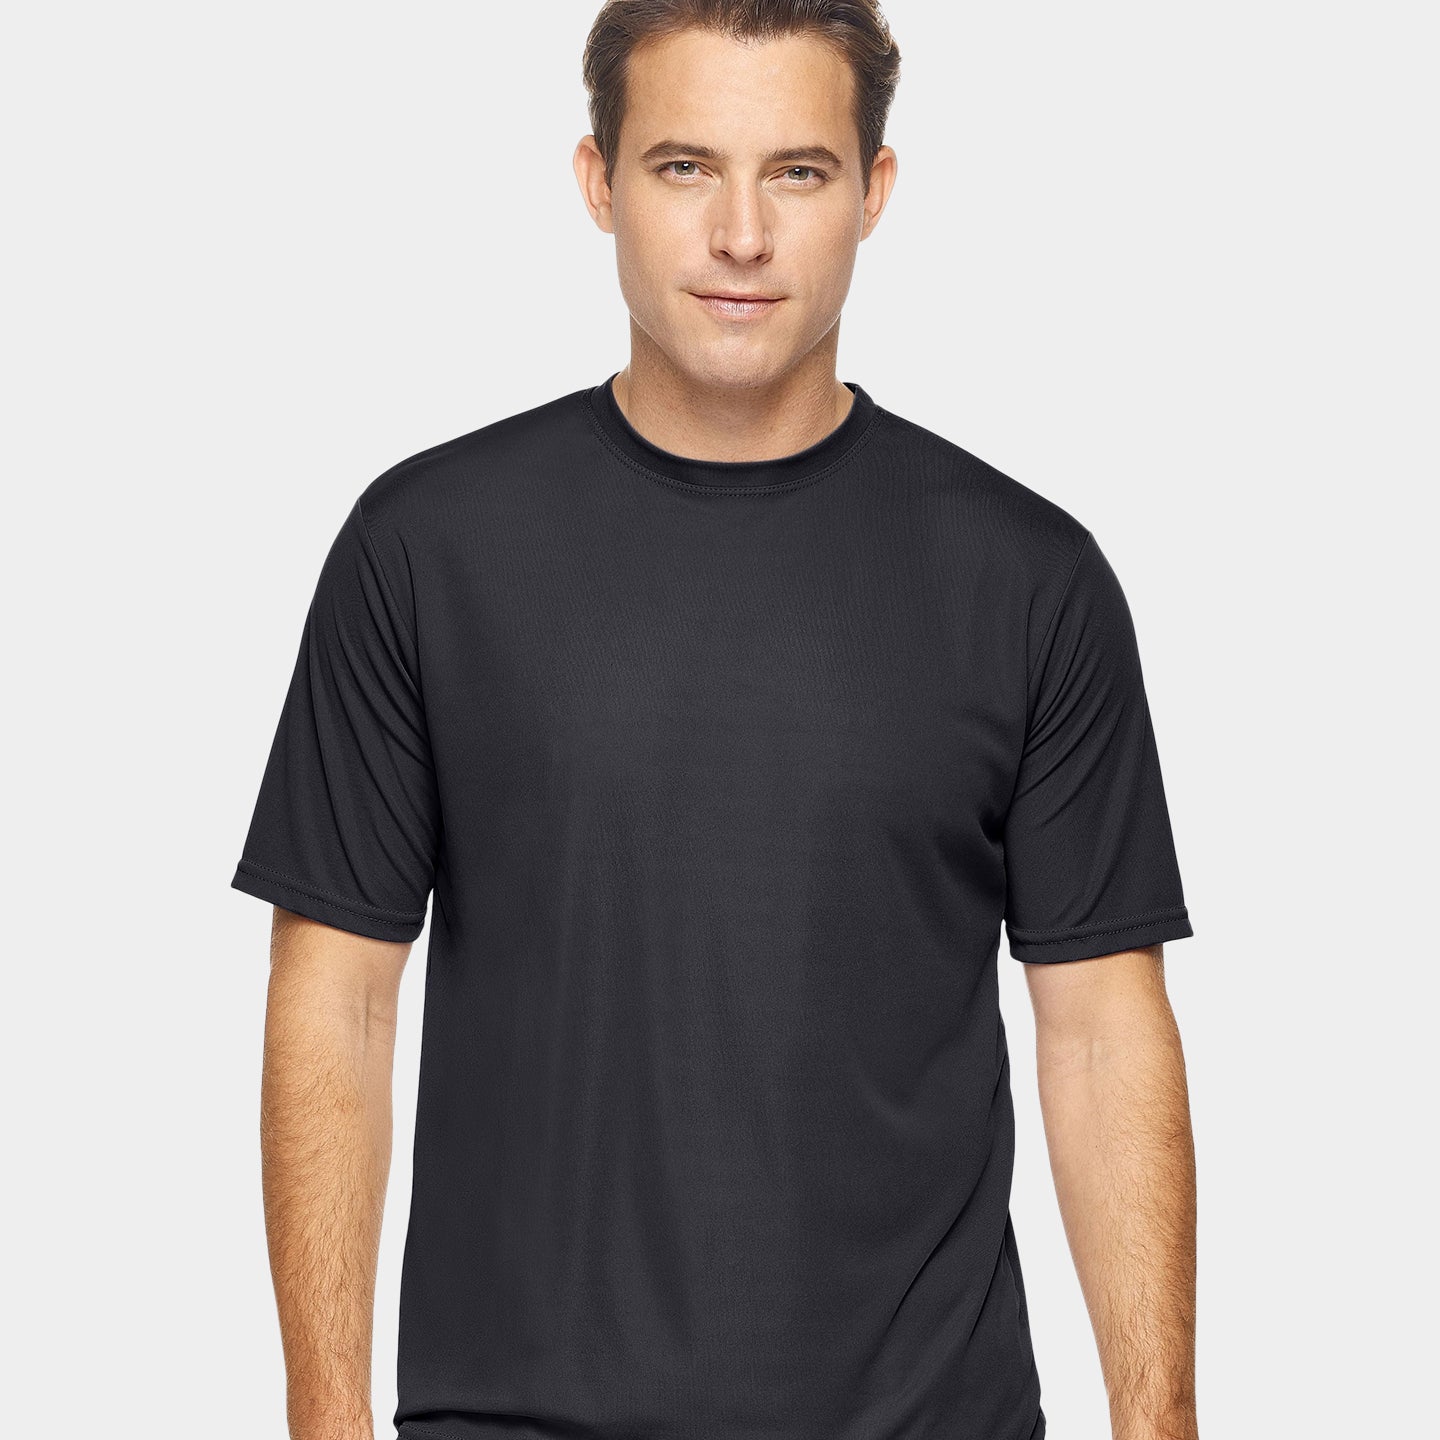 Expert Brand DriMax Men's Performance Crewneck T-Shirt A1